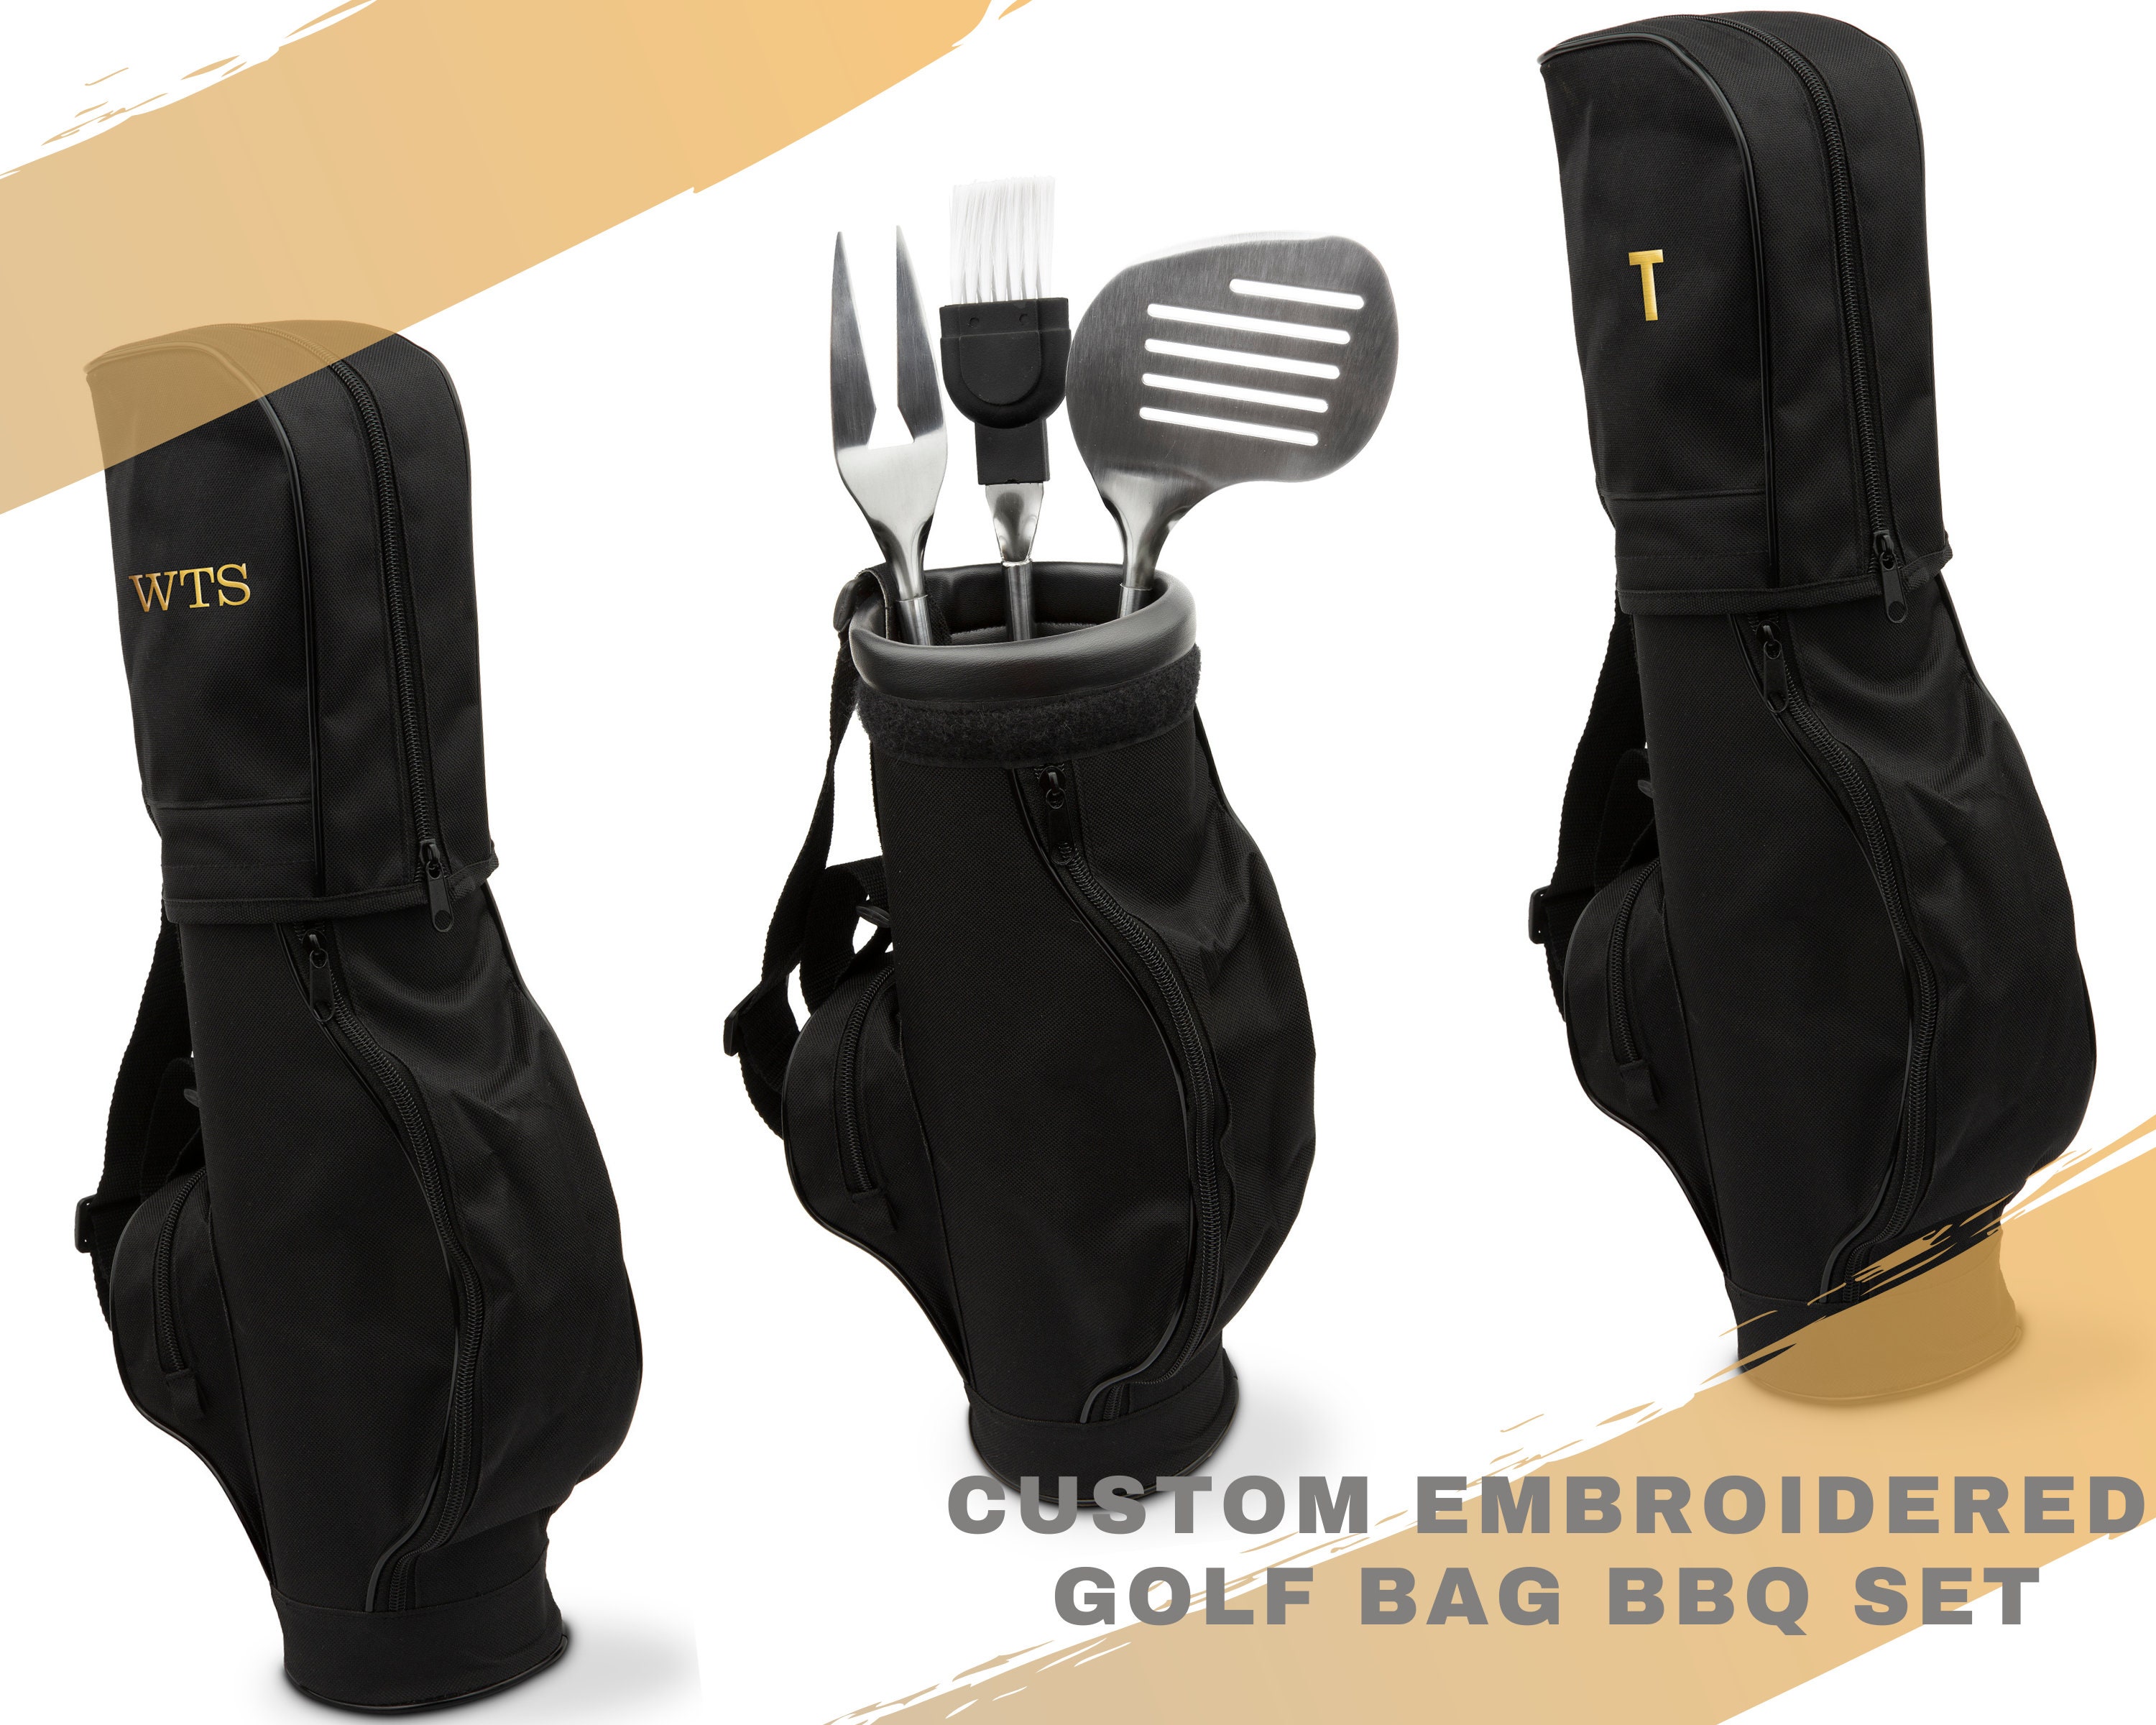 GLFHMZW POLIGO 7pcs Golf-Club Style Grill Accessories Kit with